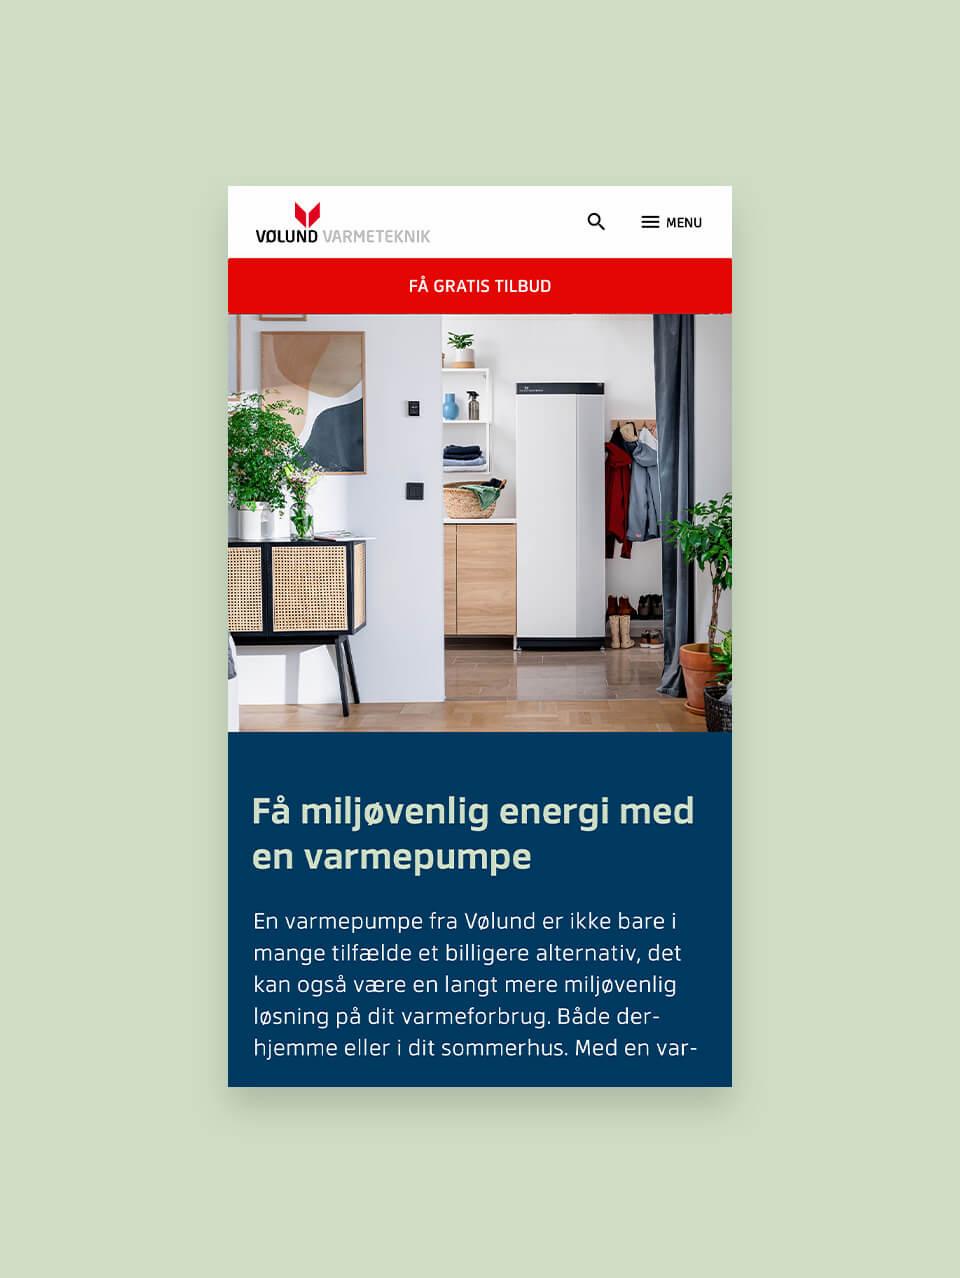 Mobil visning af Vølund Varmetekniks hjemmeside